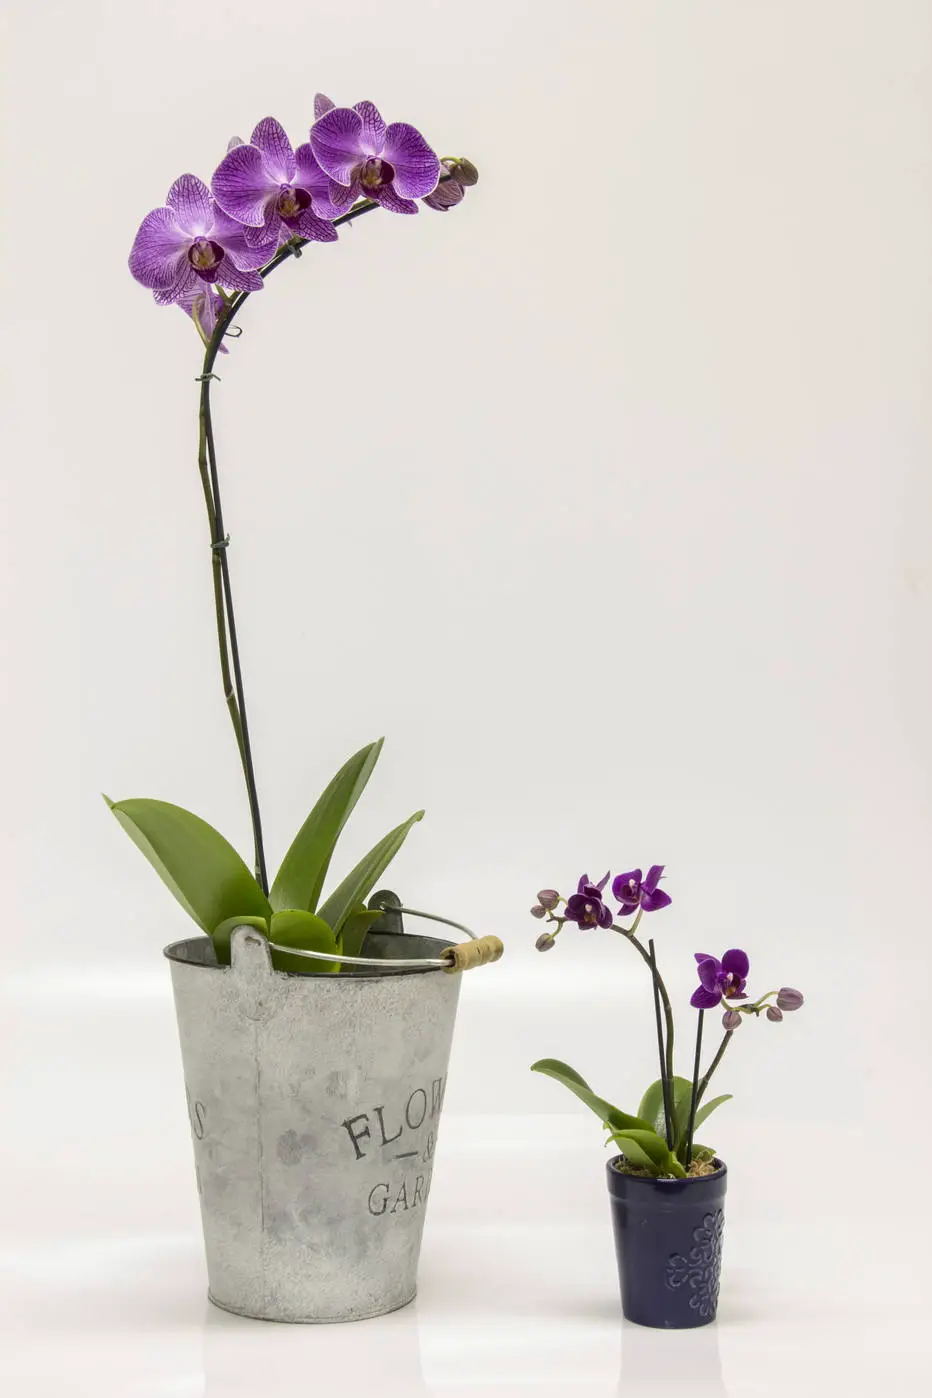 Mini Orquídeas Roxas: Fotos e Características | Mundo Ecologia